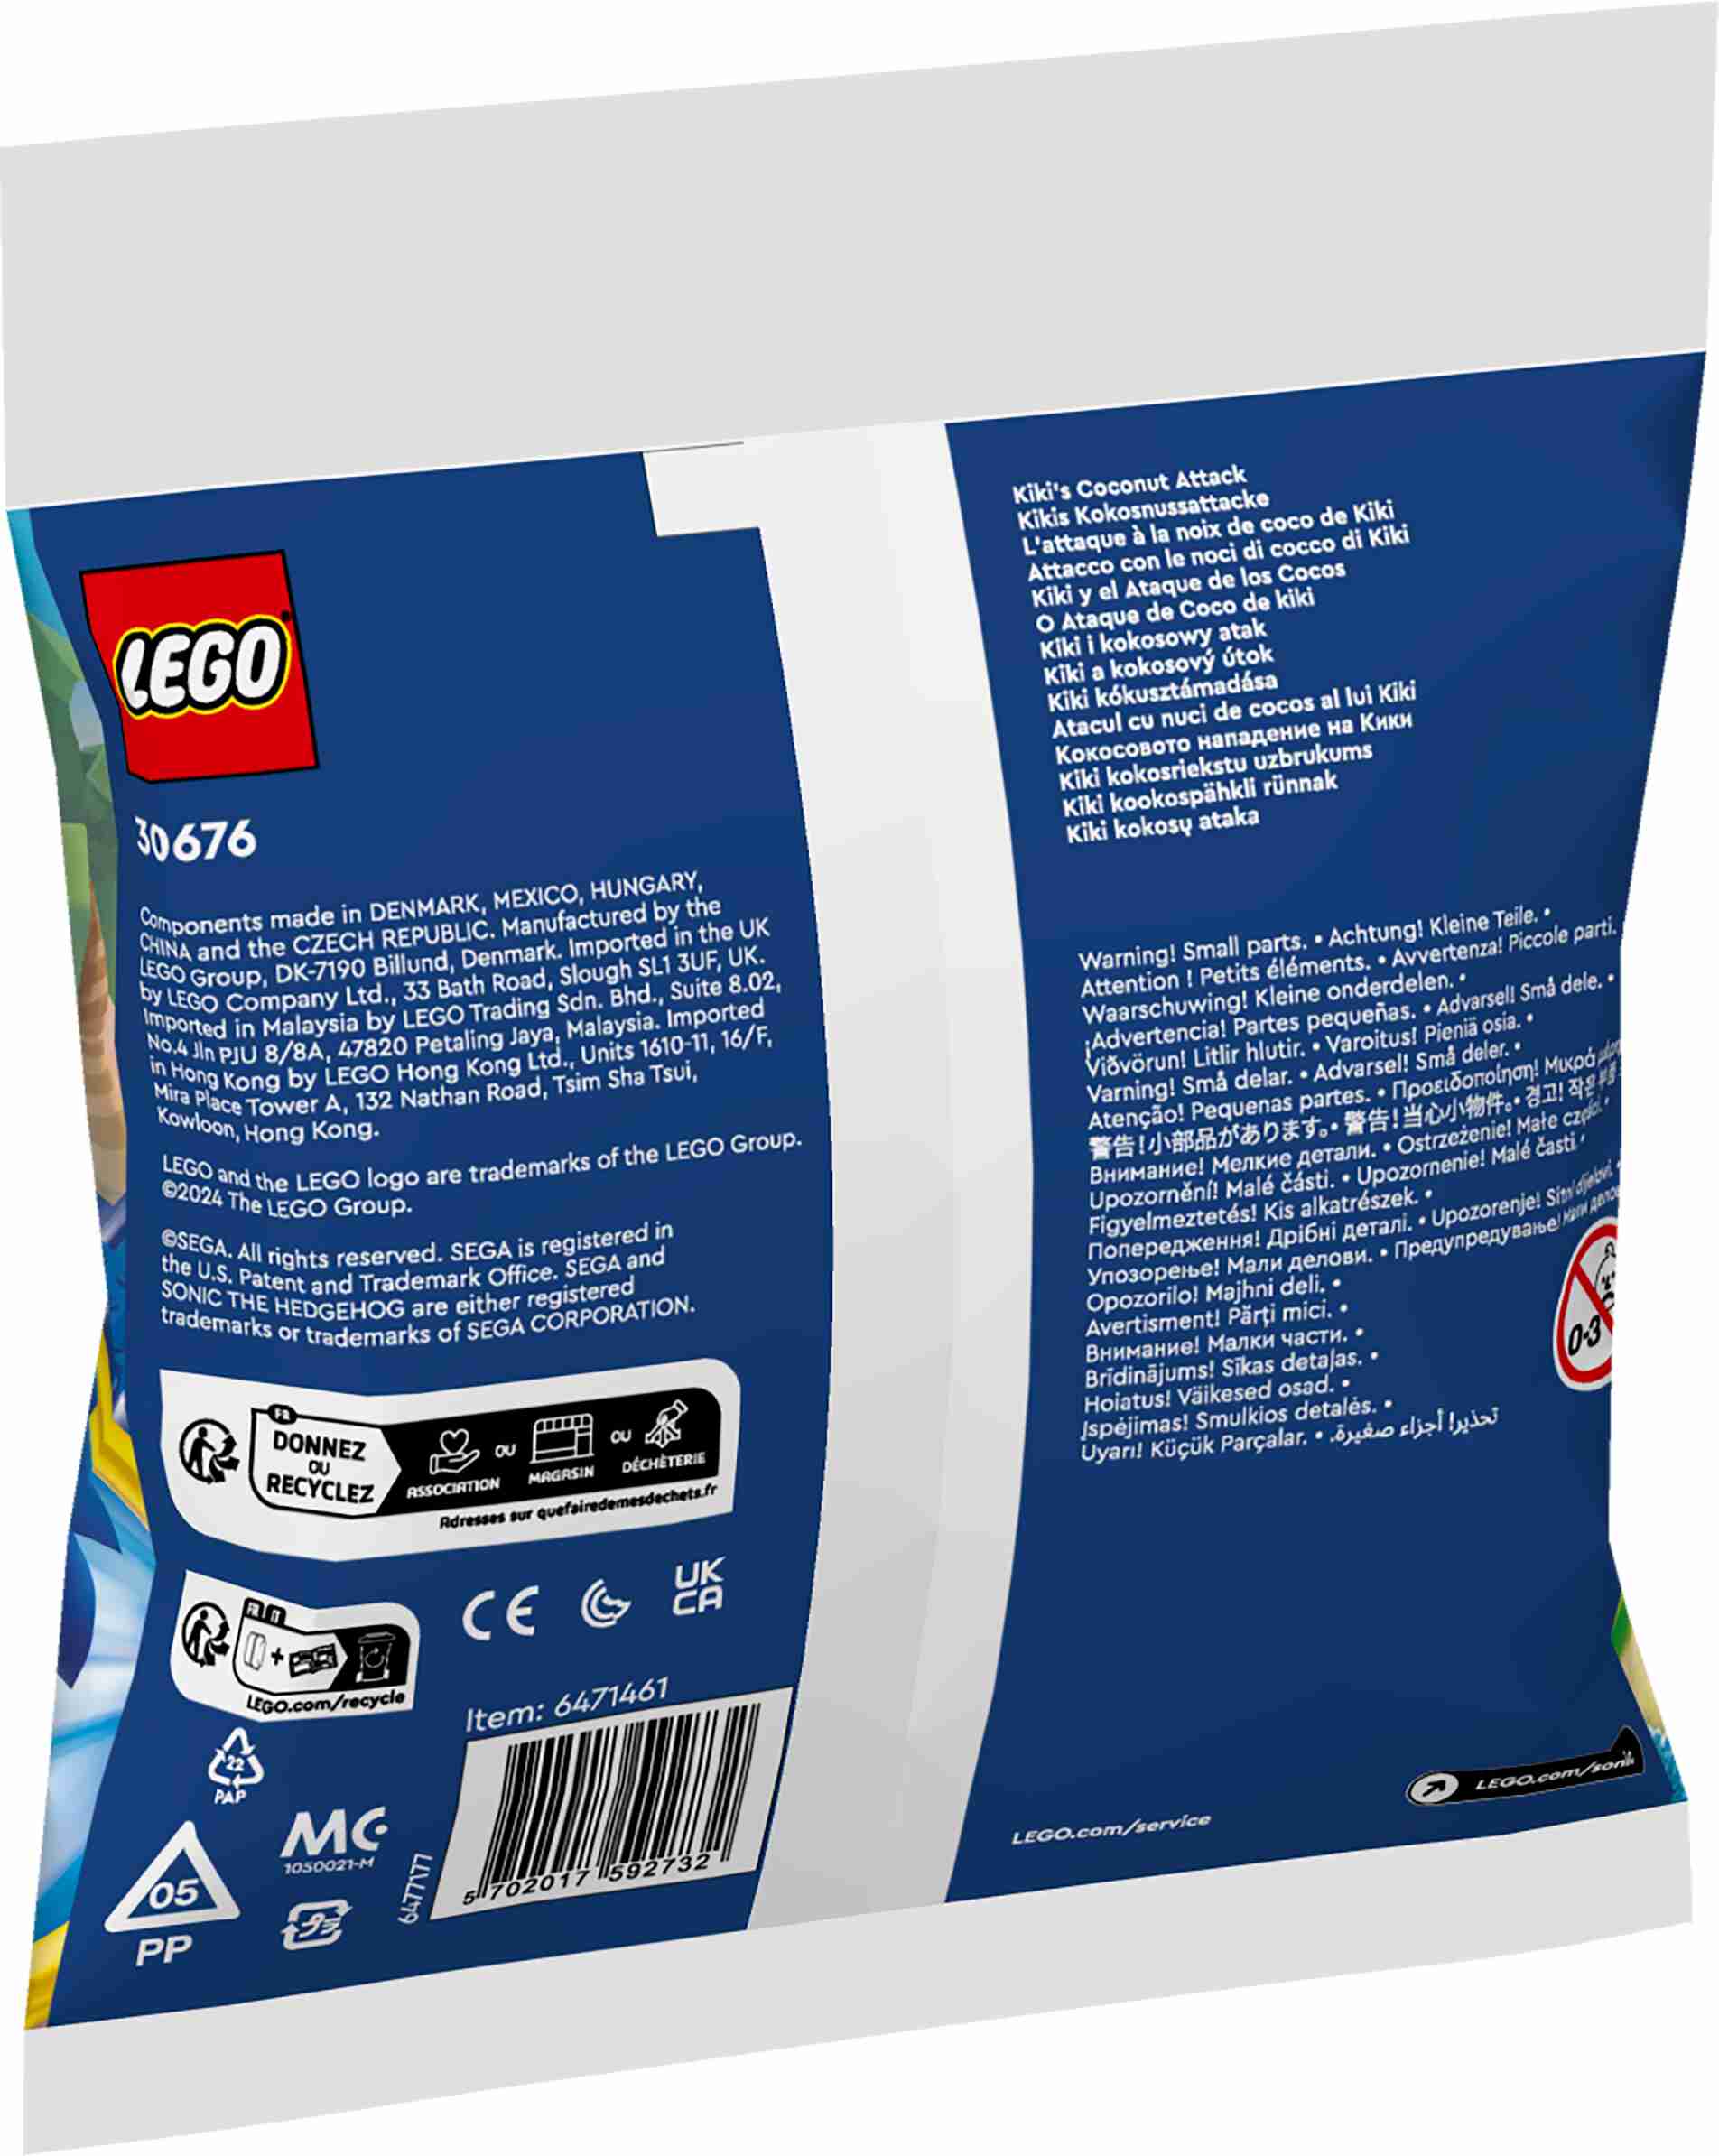 LEGO 30676 Sonic the Hedgehog Kikis Kokosnussattacke